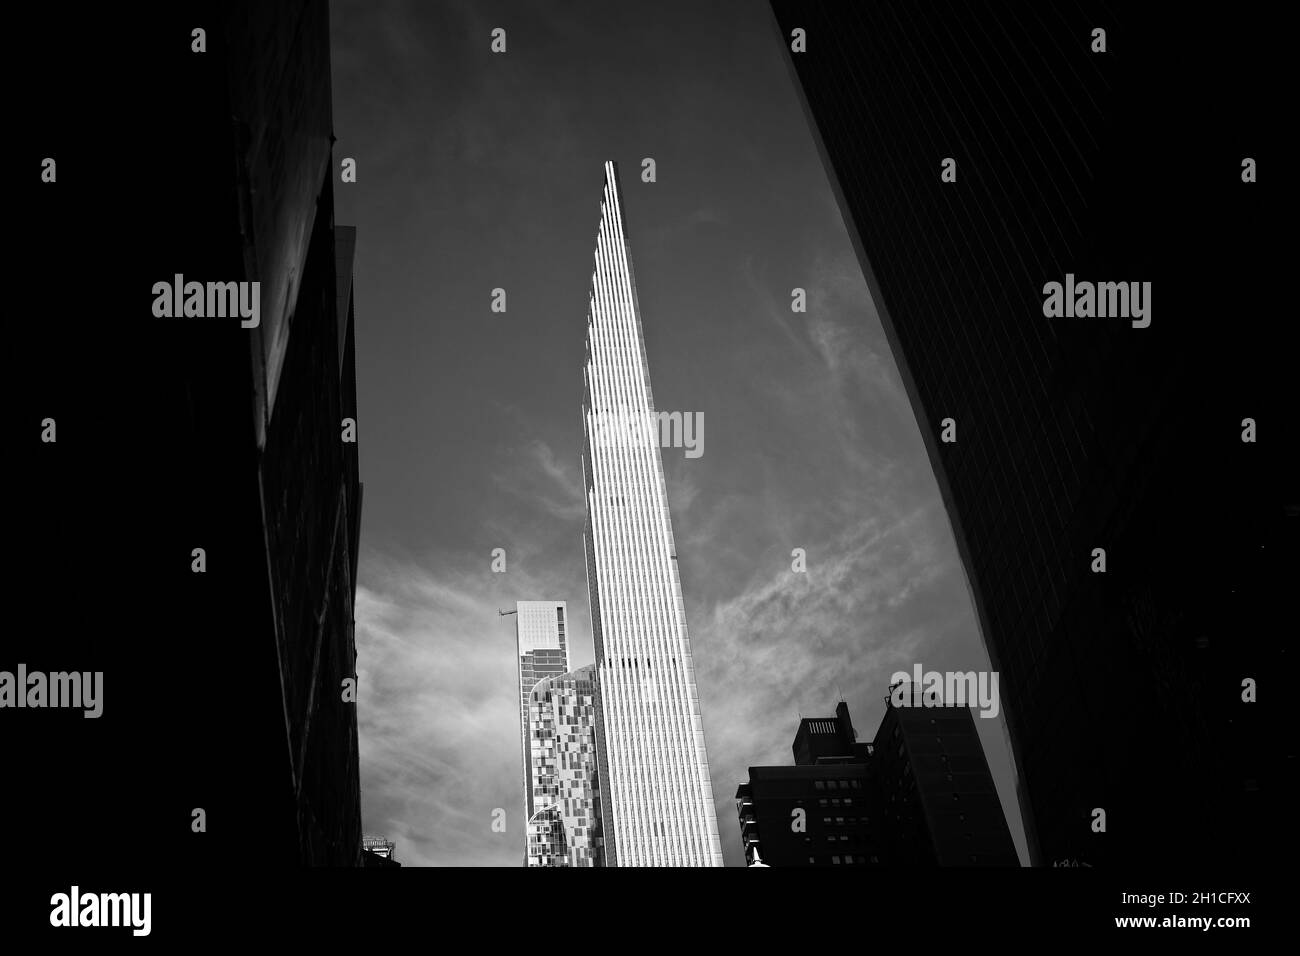 Nueva York, NY, EE.UU. - 18 de octubre de 2021: Steinway Tower en 111 W 57th Street en blanco y negro Foto de stock